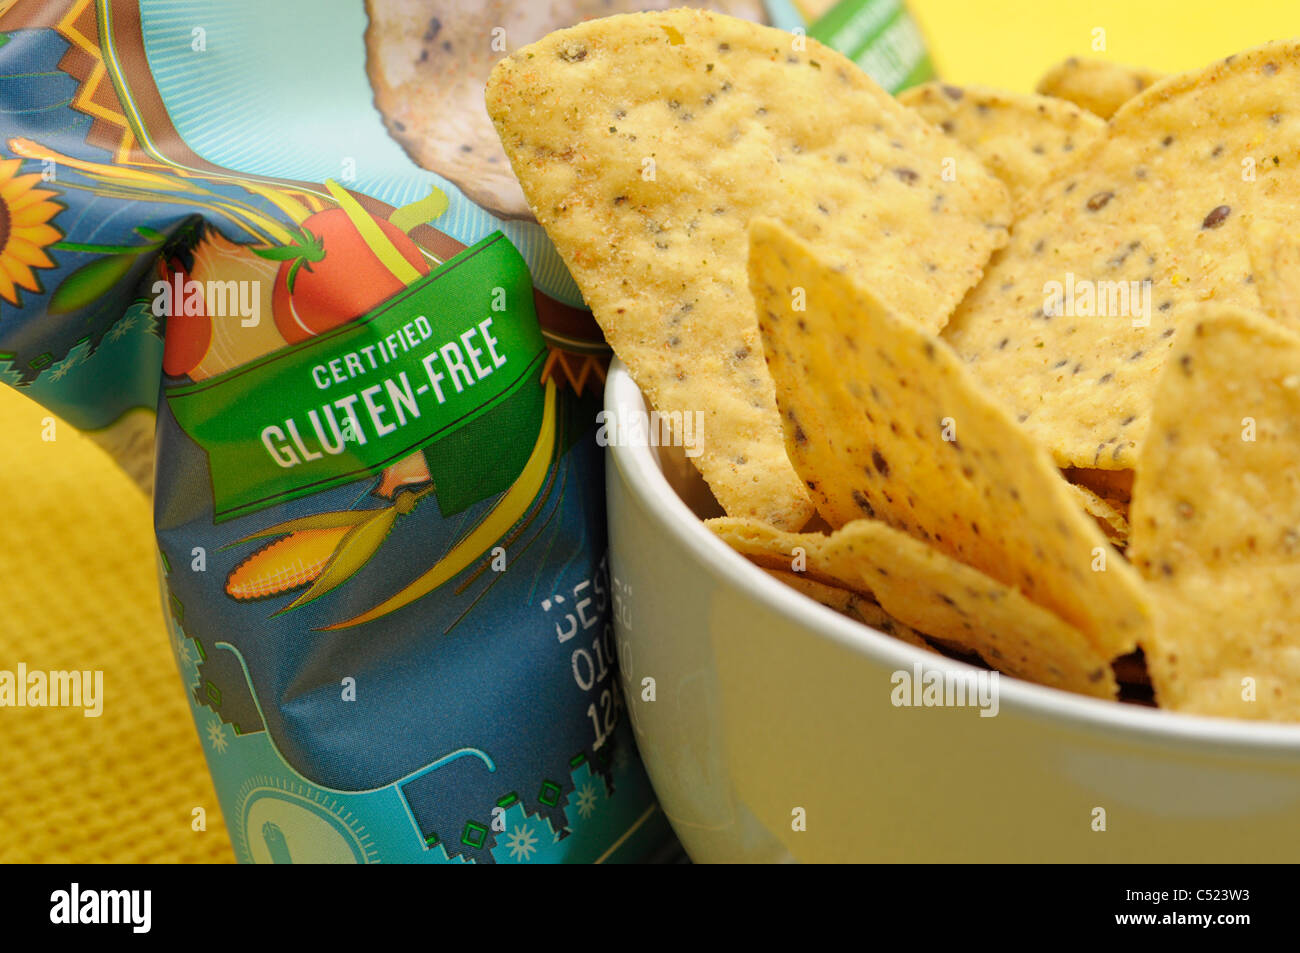 Gluten freie Lebensmittel Produkte Chips / Nachos Stockfoto